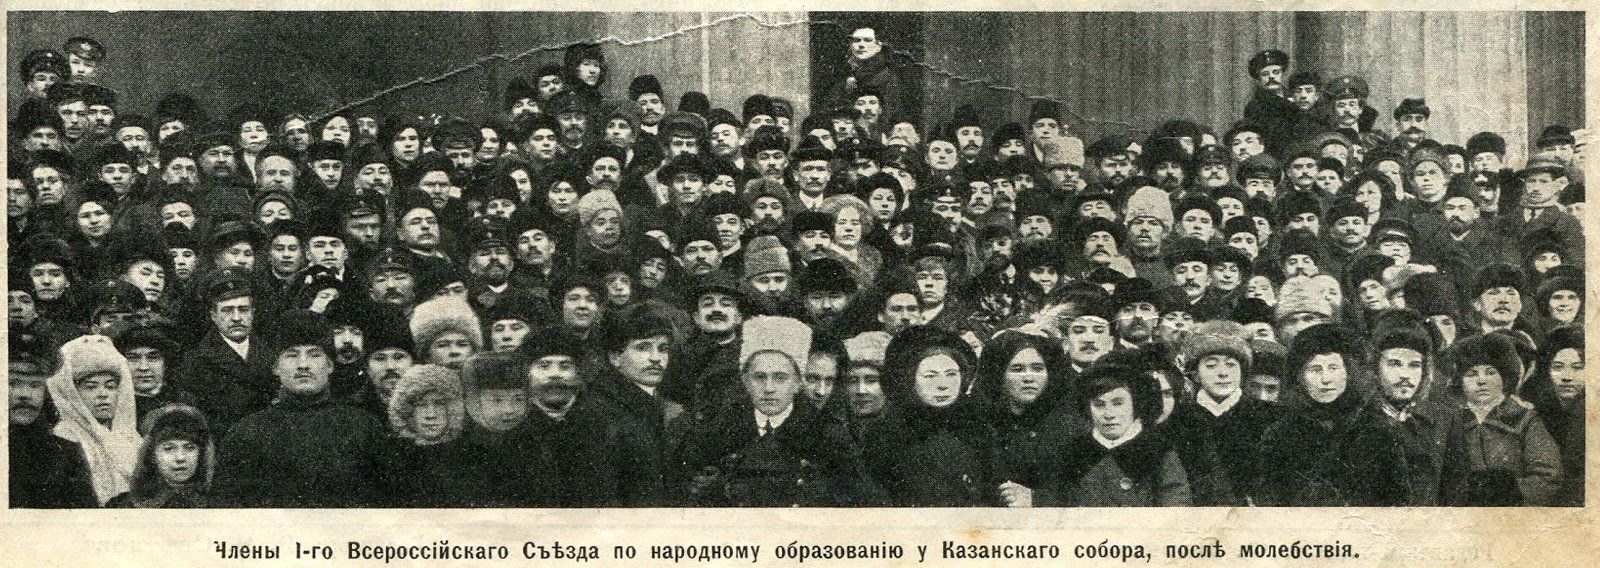 Члены 1-го Всероссийского Съезда по народному образованию 